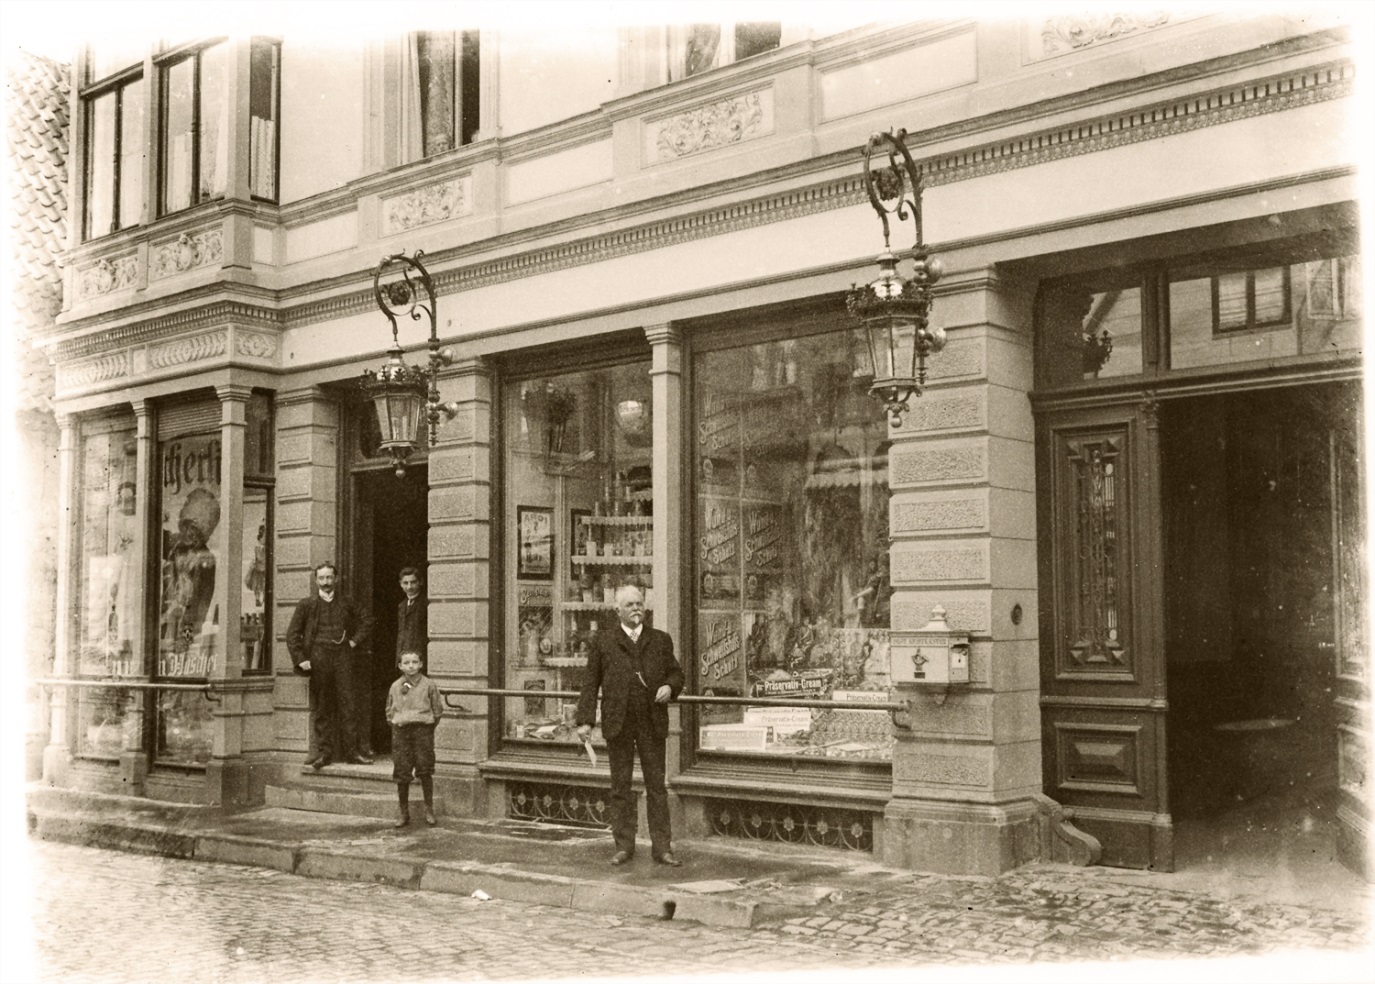 GEHWOL-Erfinder Eduard Gerlach (der Ältere) vor seiner Drogerie in der Langen Straße in Lübbecke.